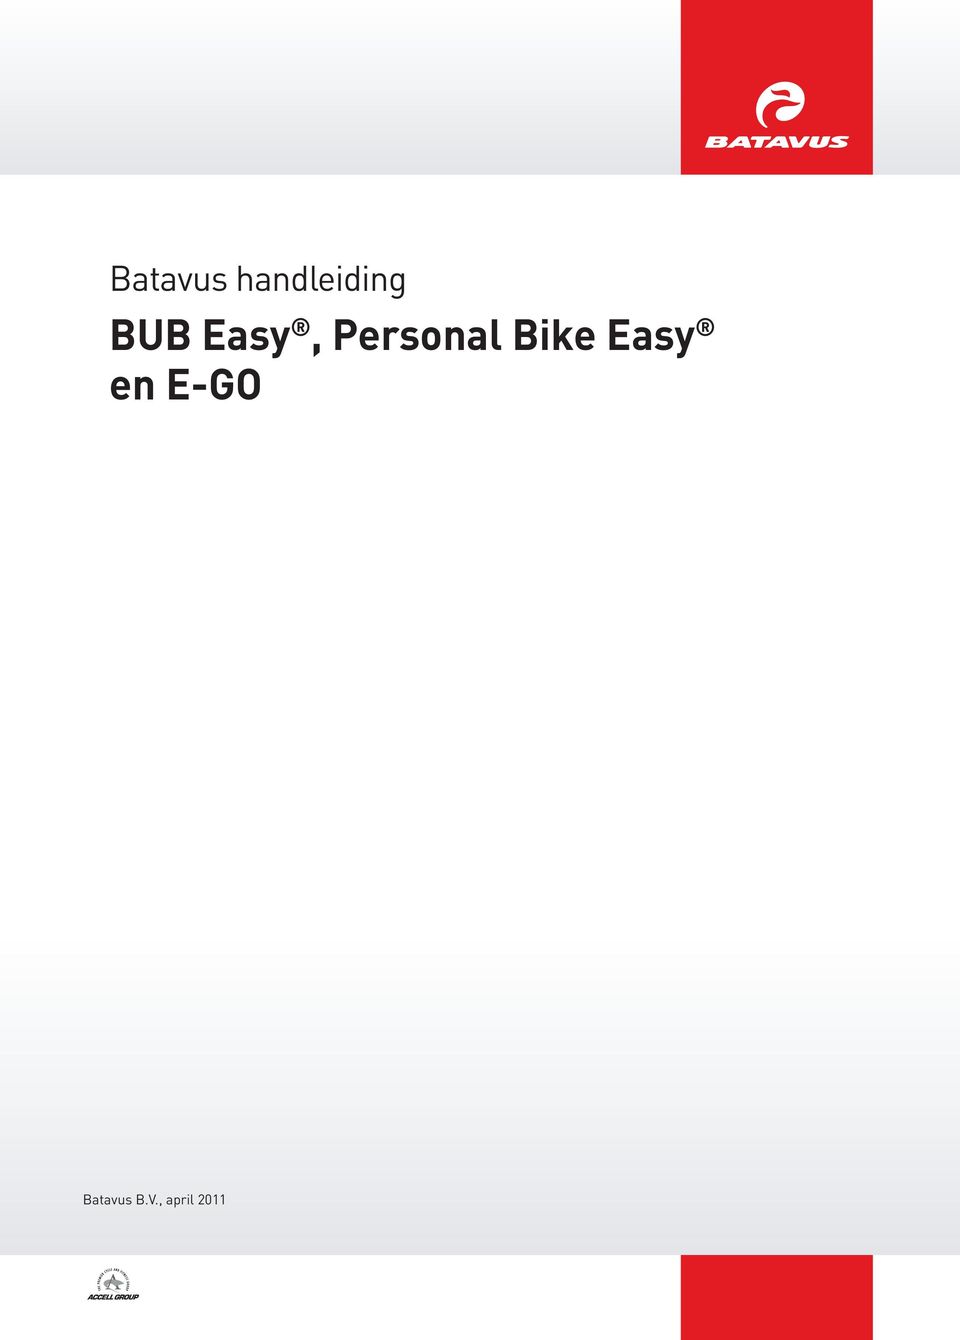 Bike Easy en E-GO